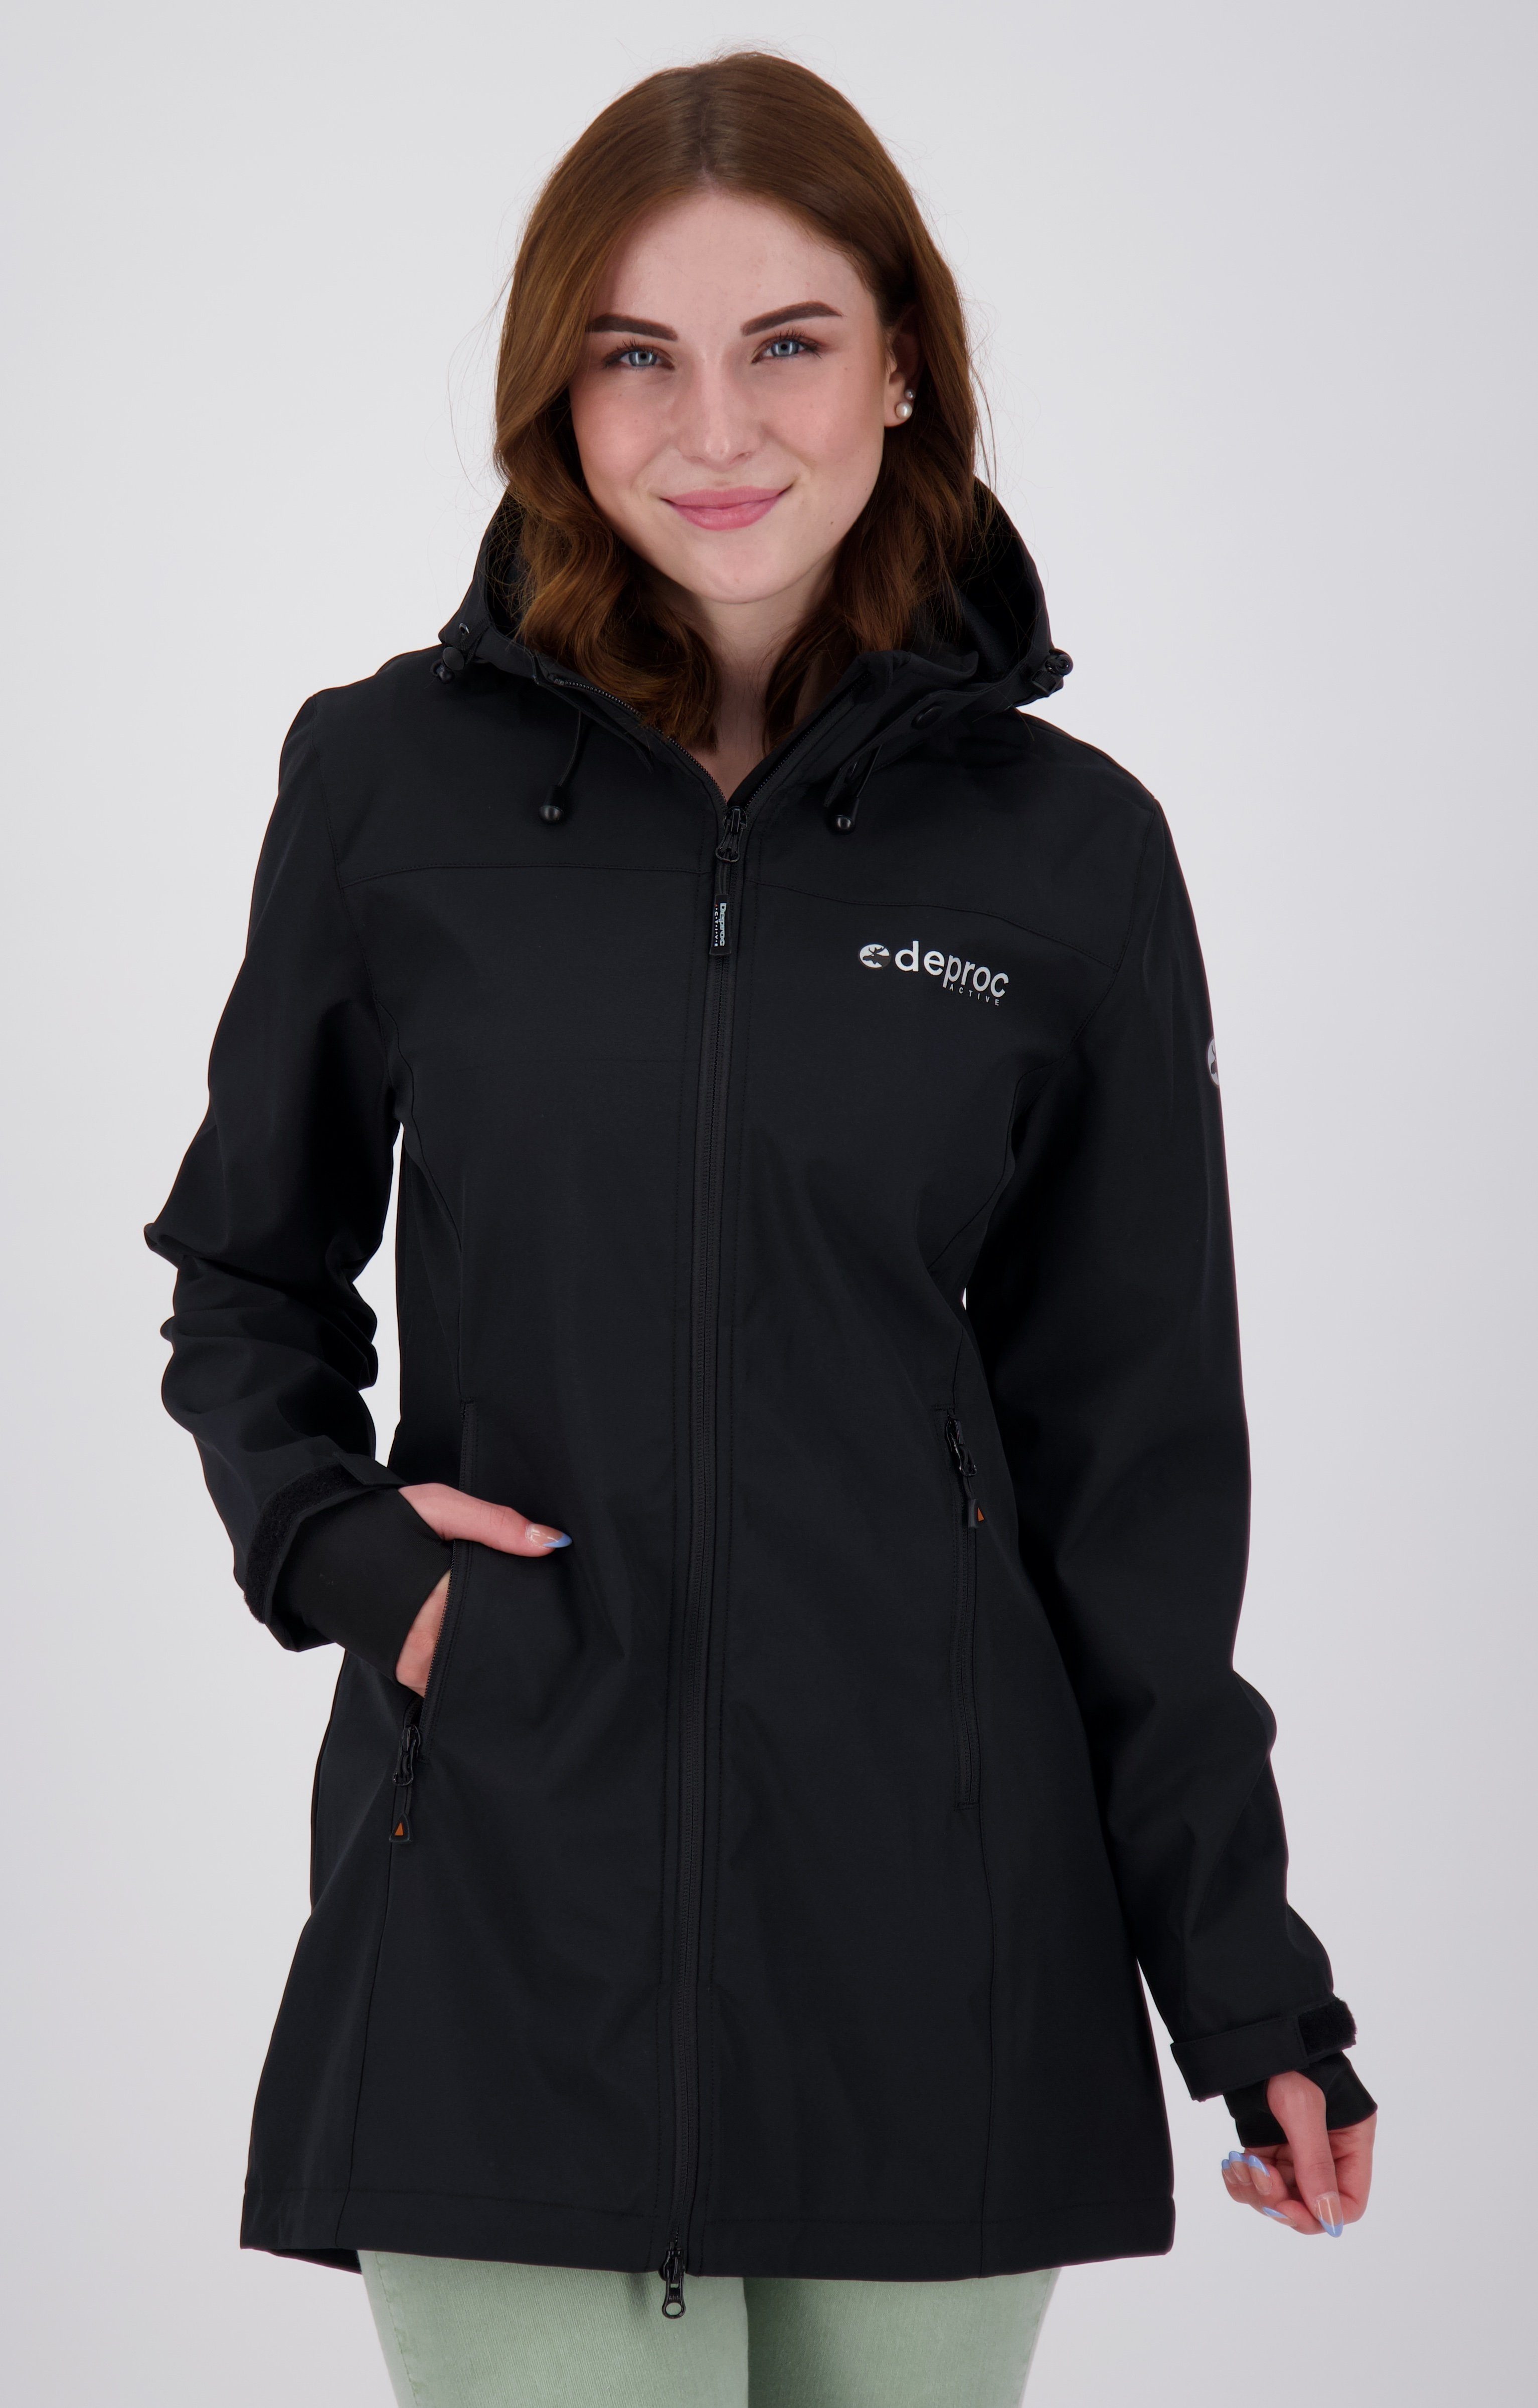 DEPROC Active Softshellmantel Long Größen in CAVELL Großen jacket WOMEN erhältlich auch CS LONG